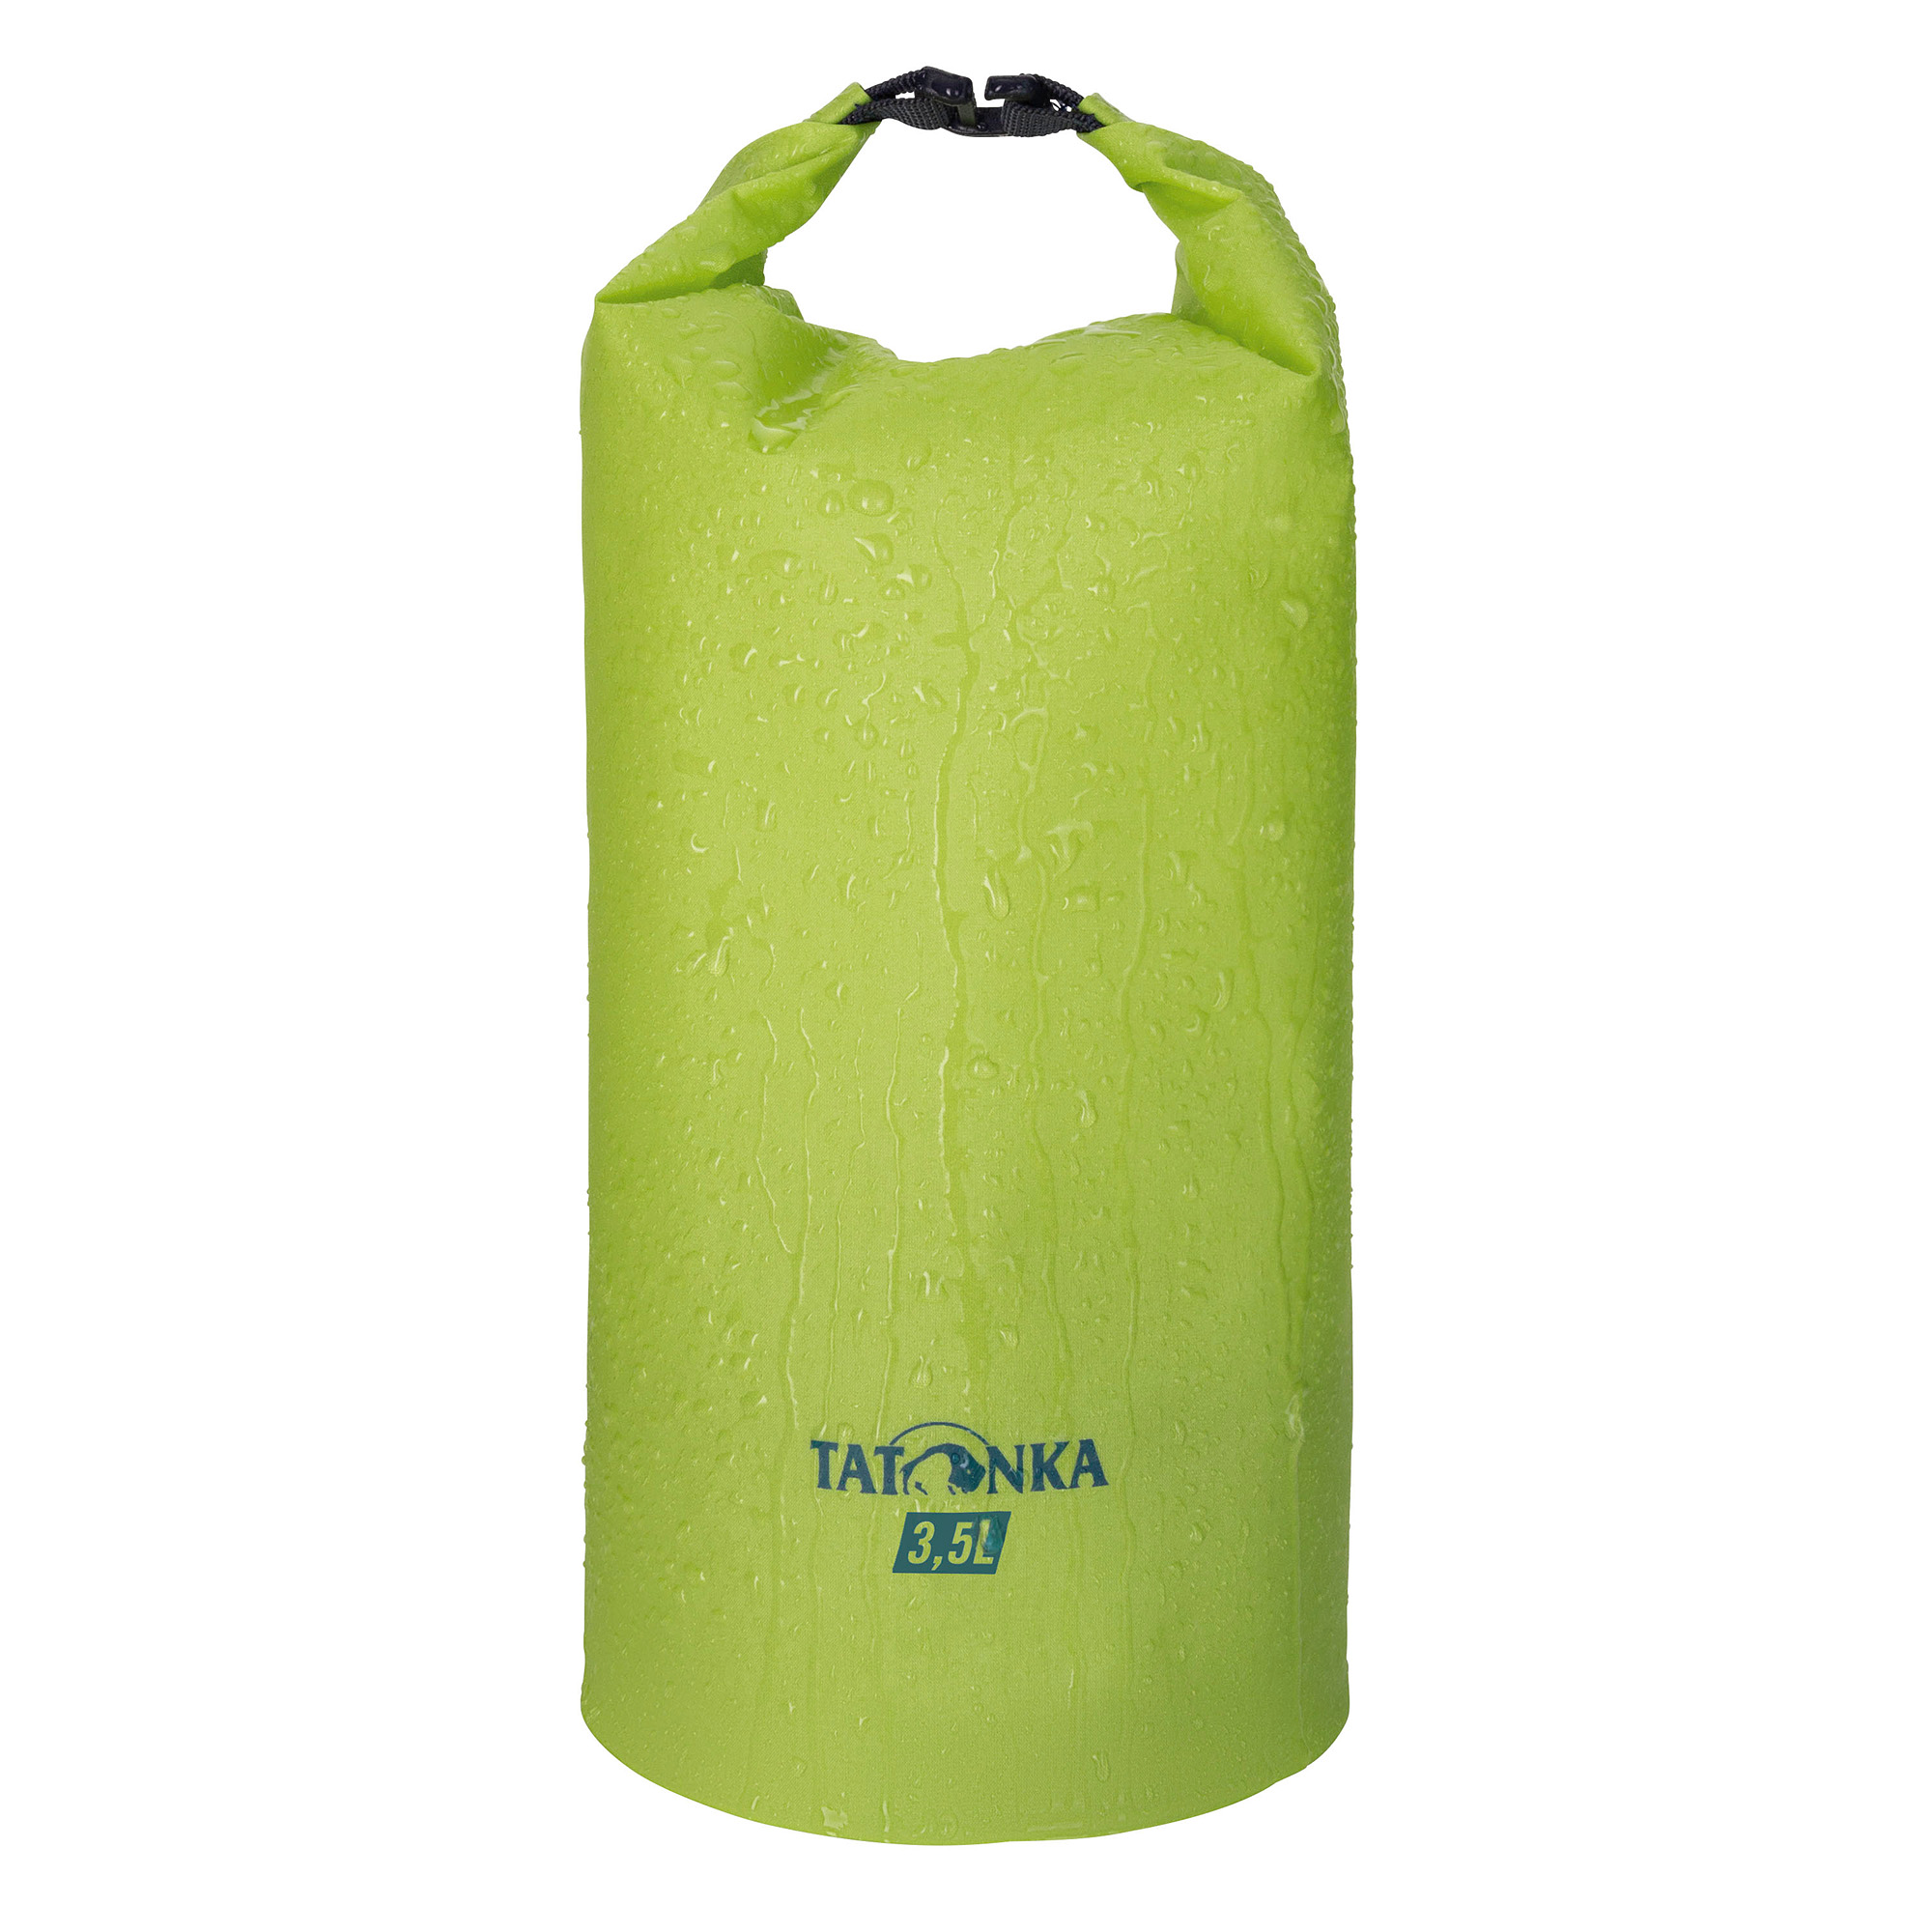 Tatonka WP Stuffbag Light 3,5l lime grün Rucksack-Zubehör 4013236382402